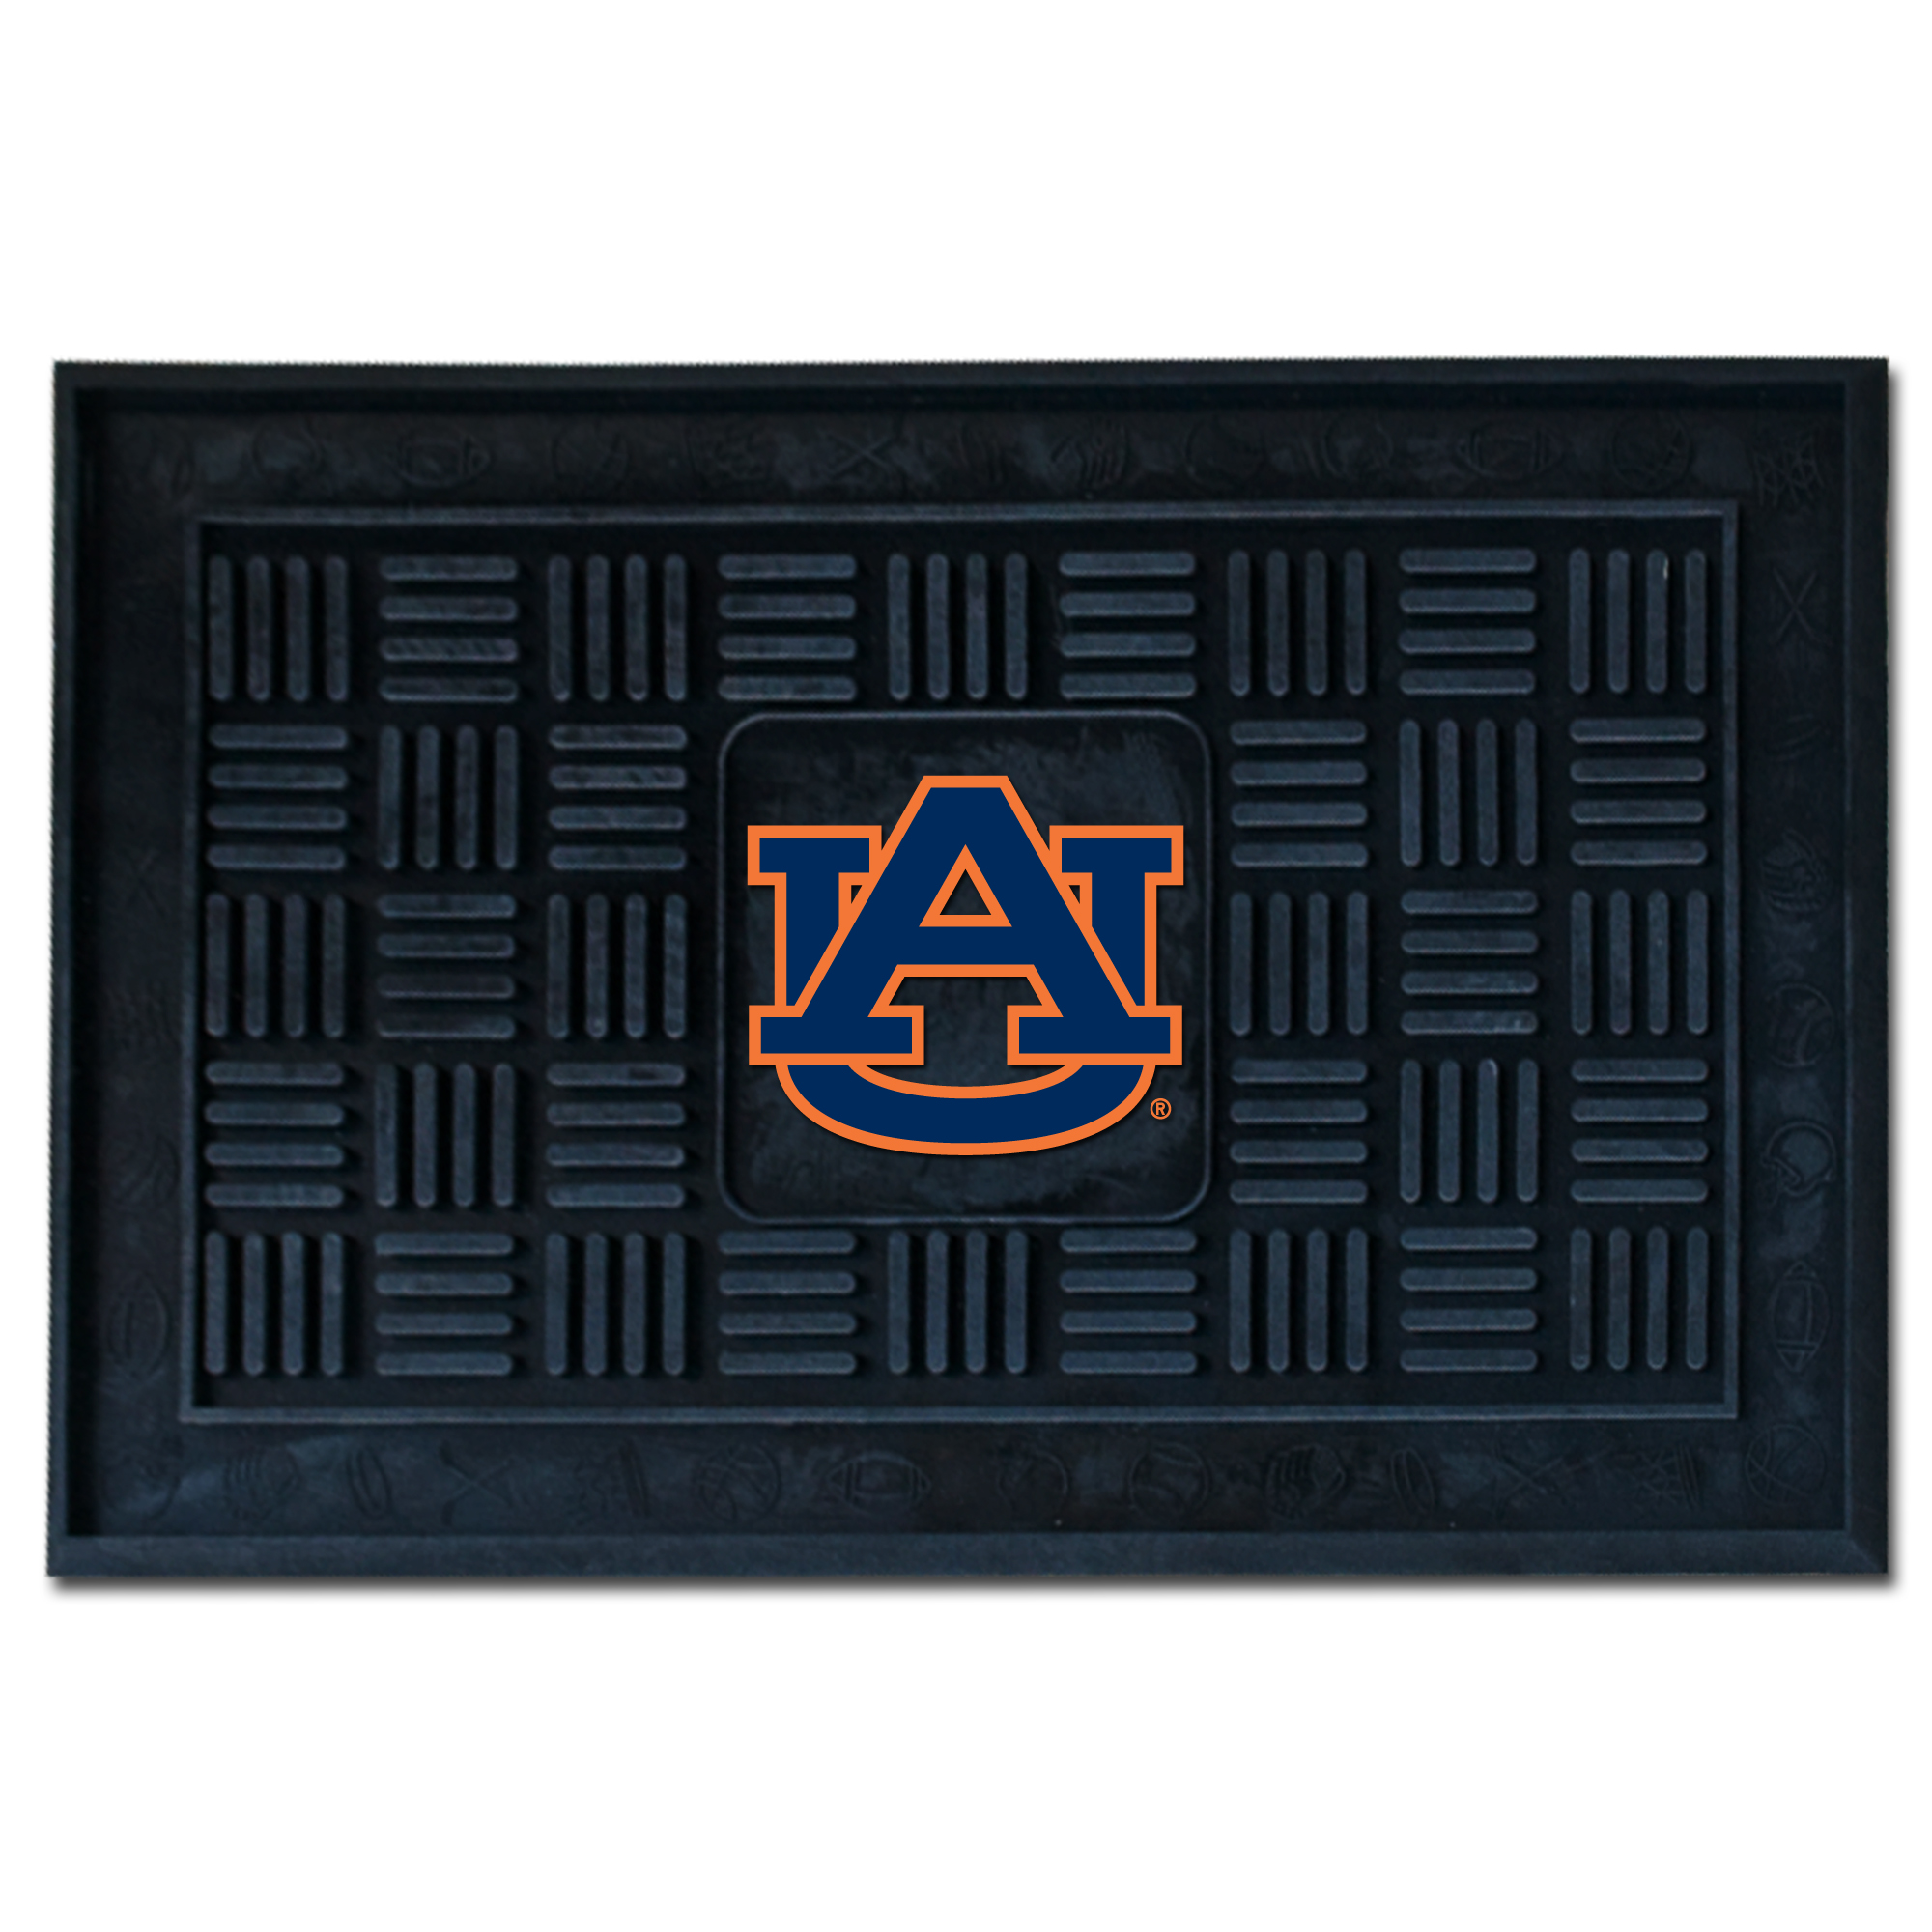 Auburn University Medallion Door Mat 19" x 30"